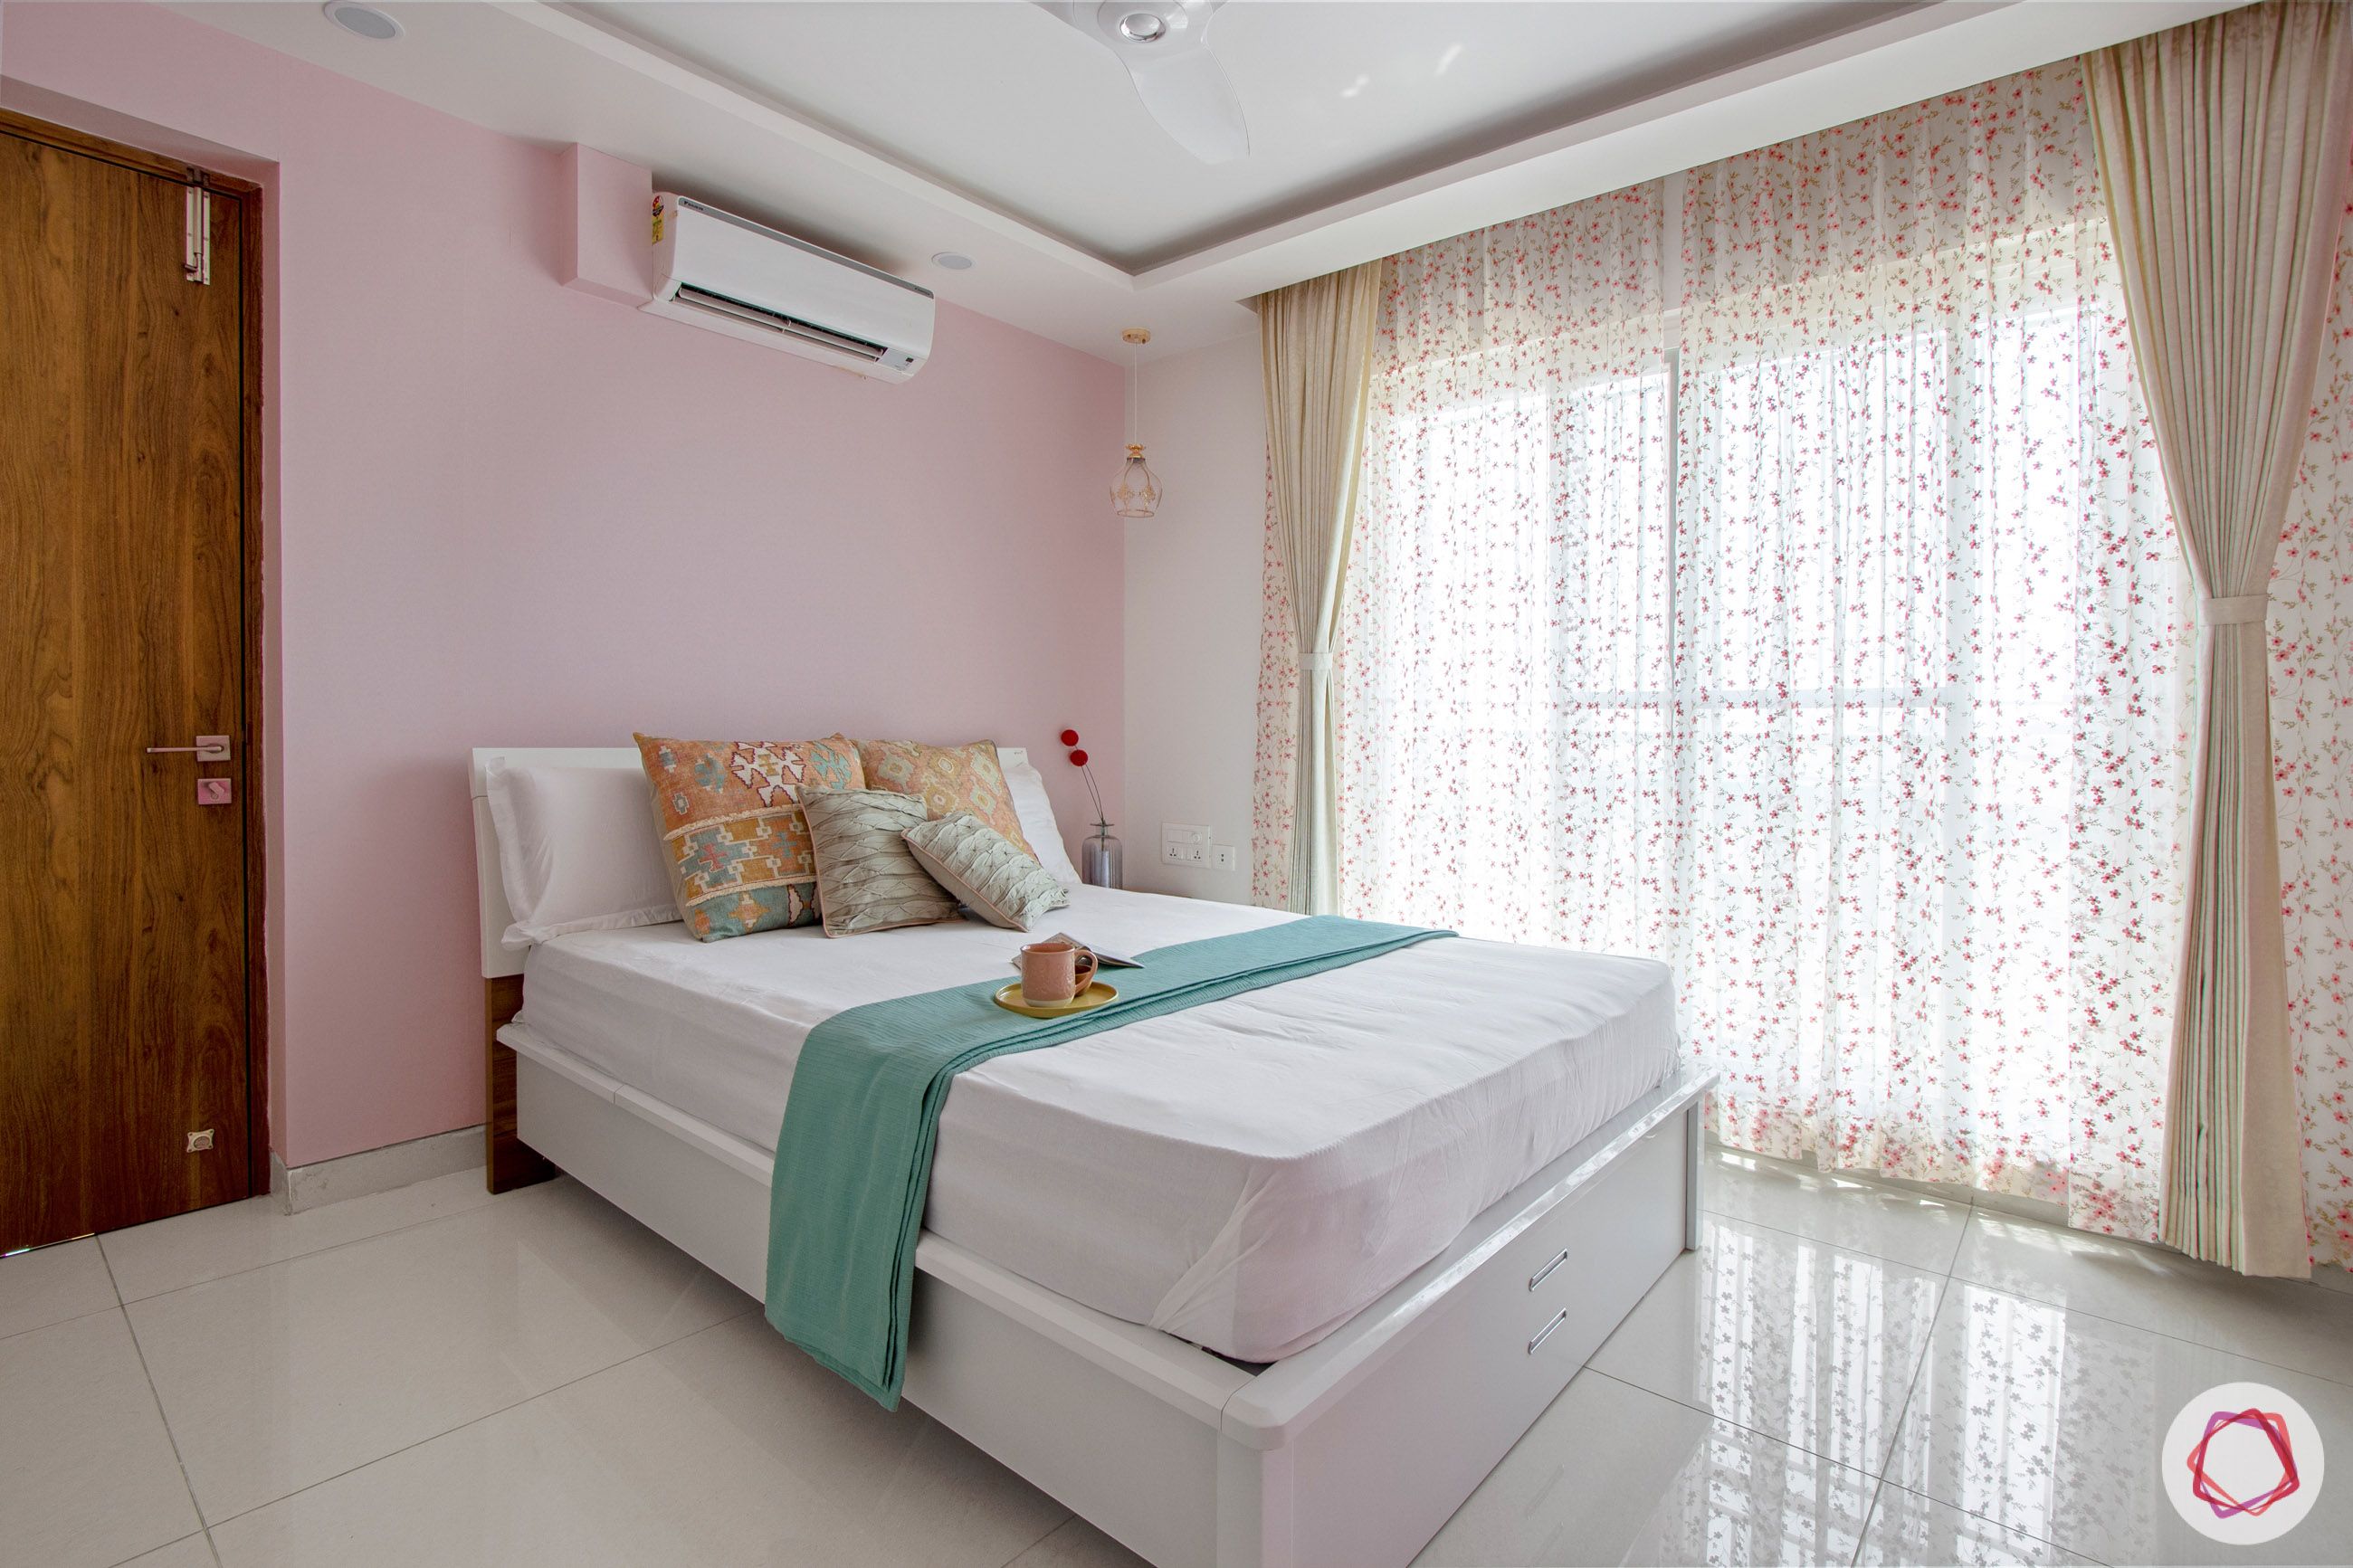 snn-raj-grandeur-girls bedroom-pink wall